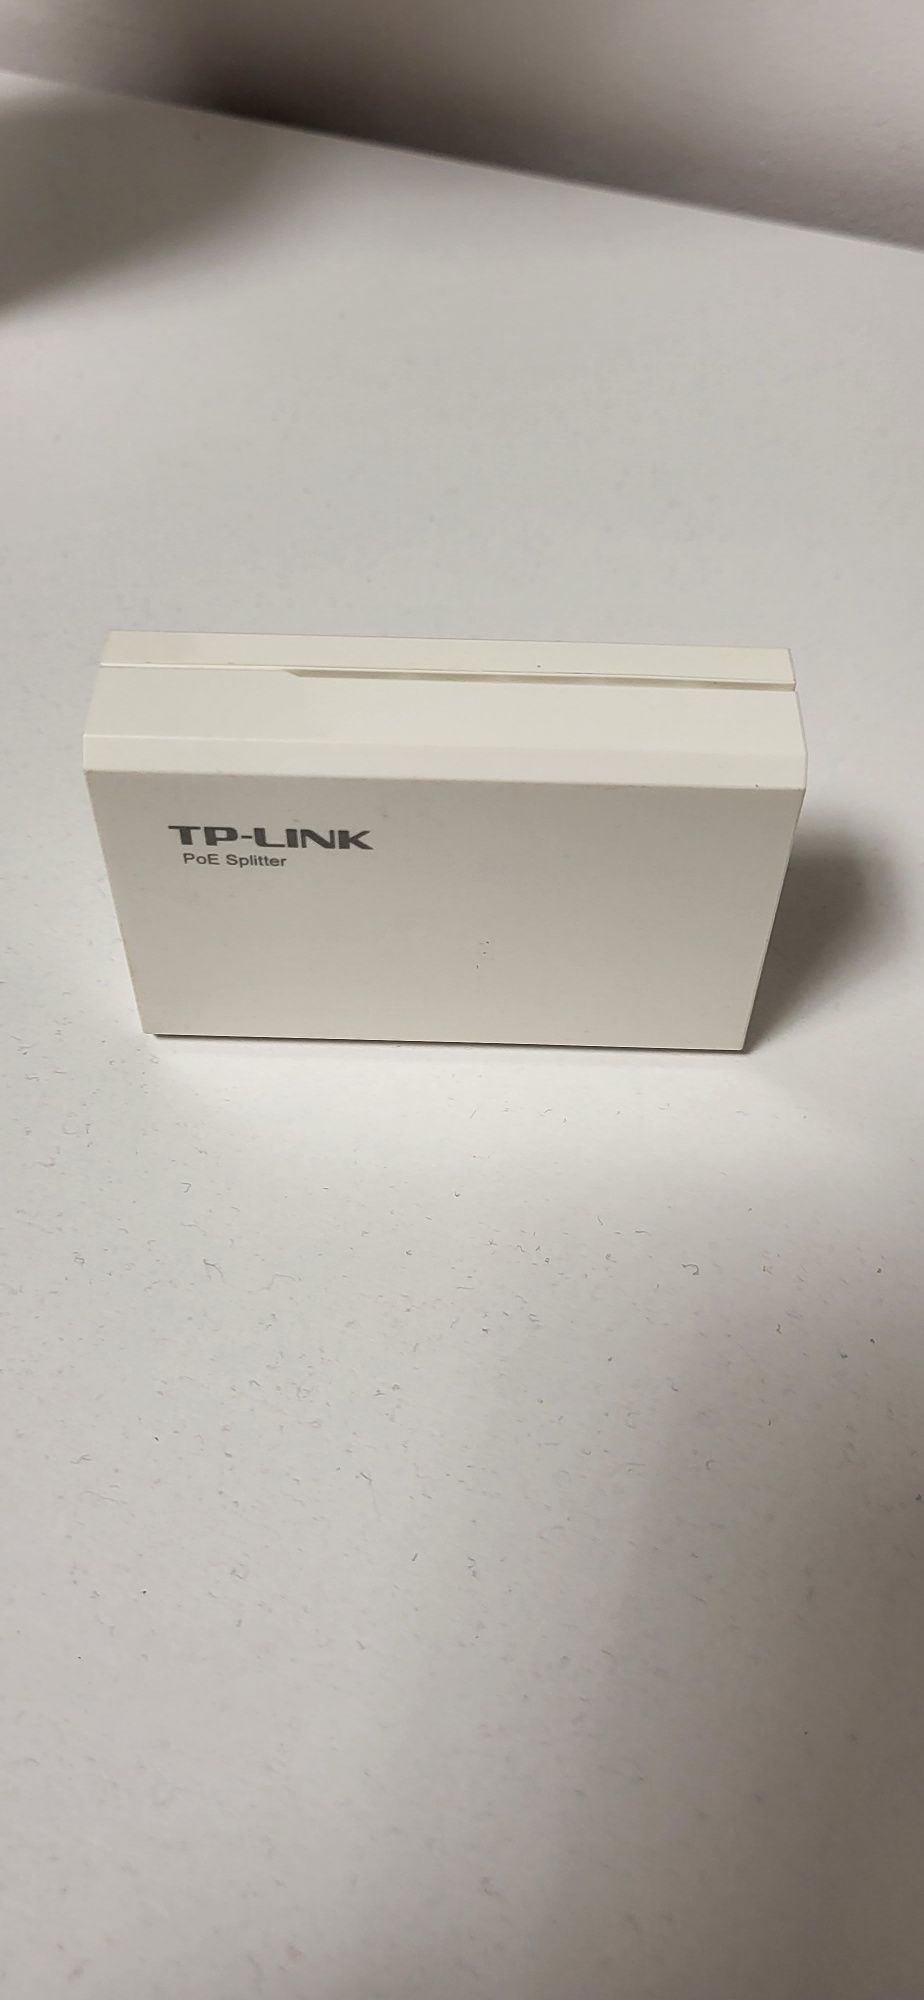 TP-LINK  poE  splitter